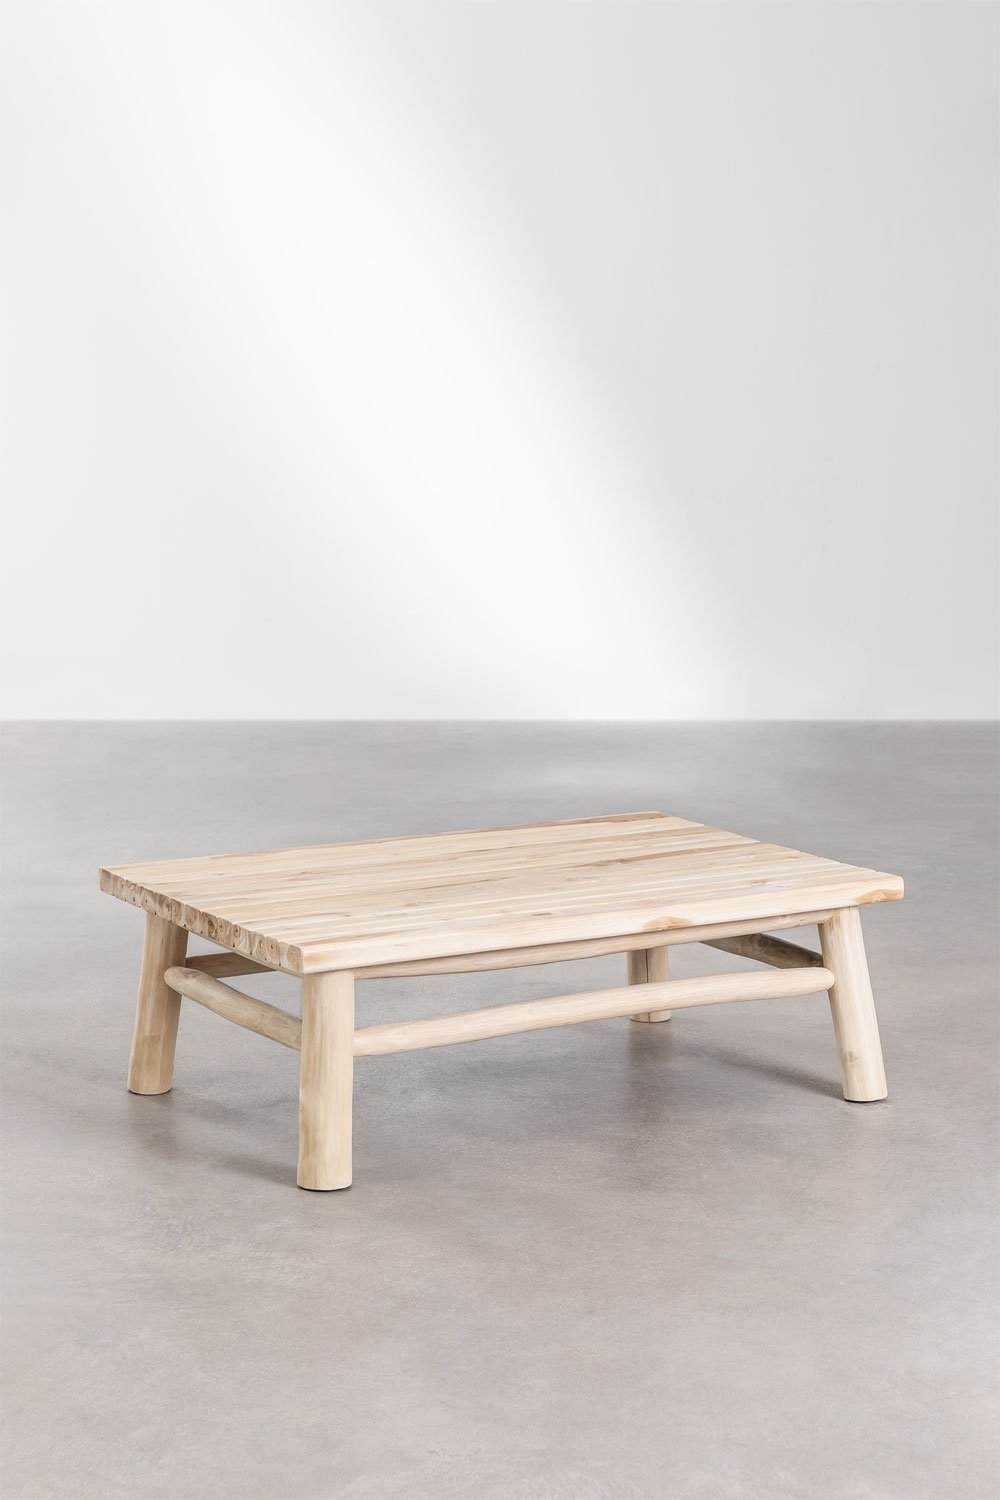 Prostokątny stolik kawowy do ogrodu z drewna tekowego (120x80 cm) Narel, obrazek w galerii 1